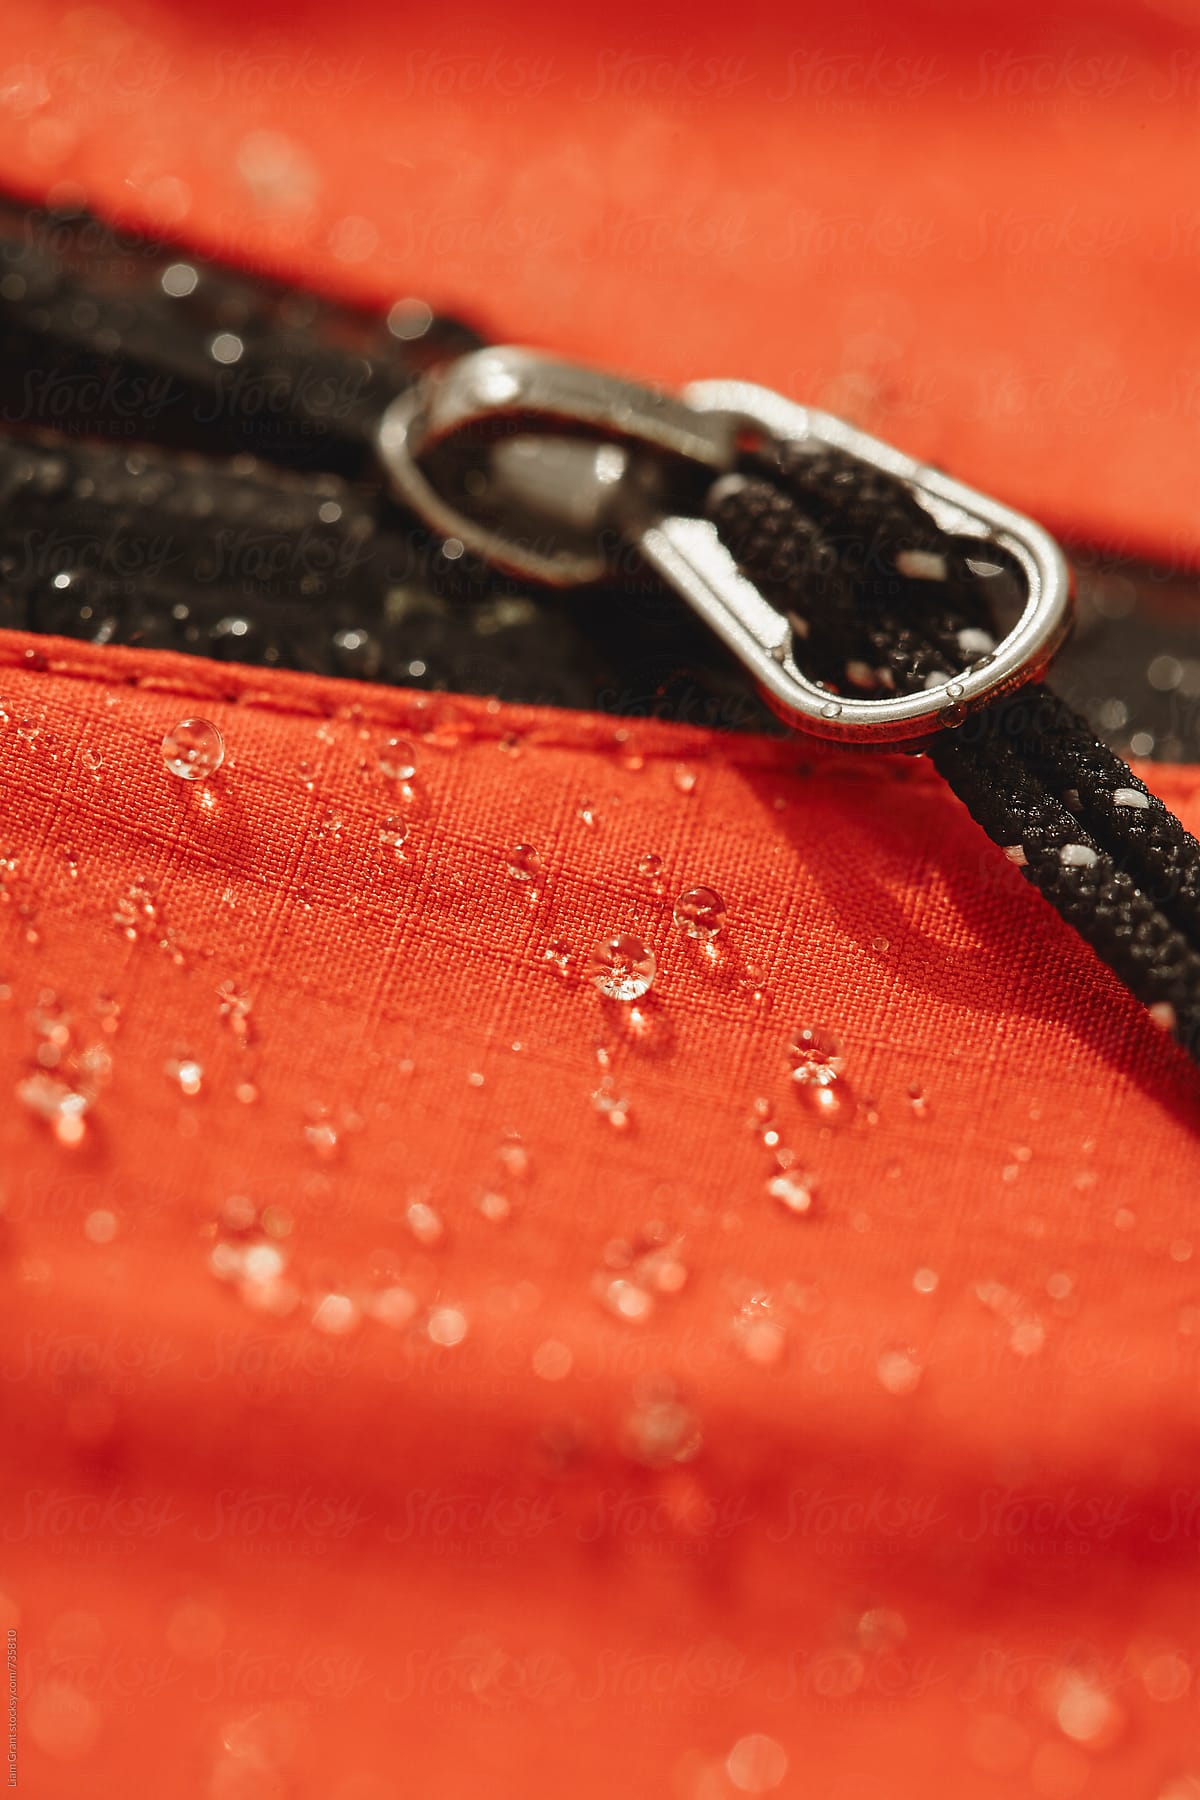 Waterproof zip and fabric of a hardshell mountaineering jacket.